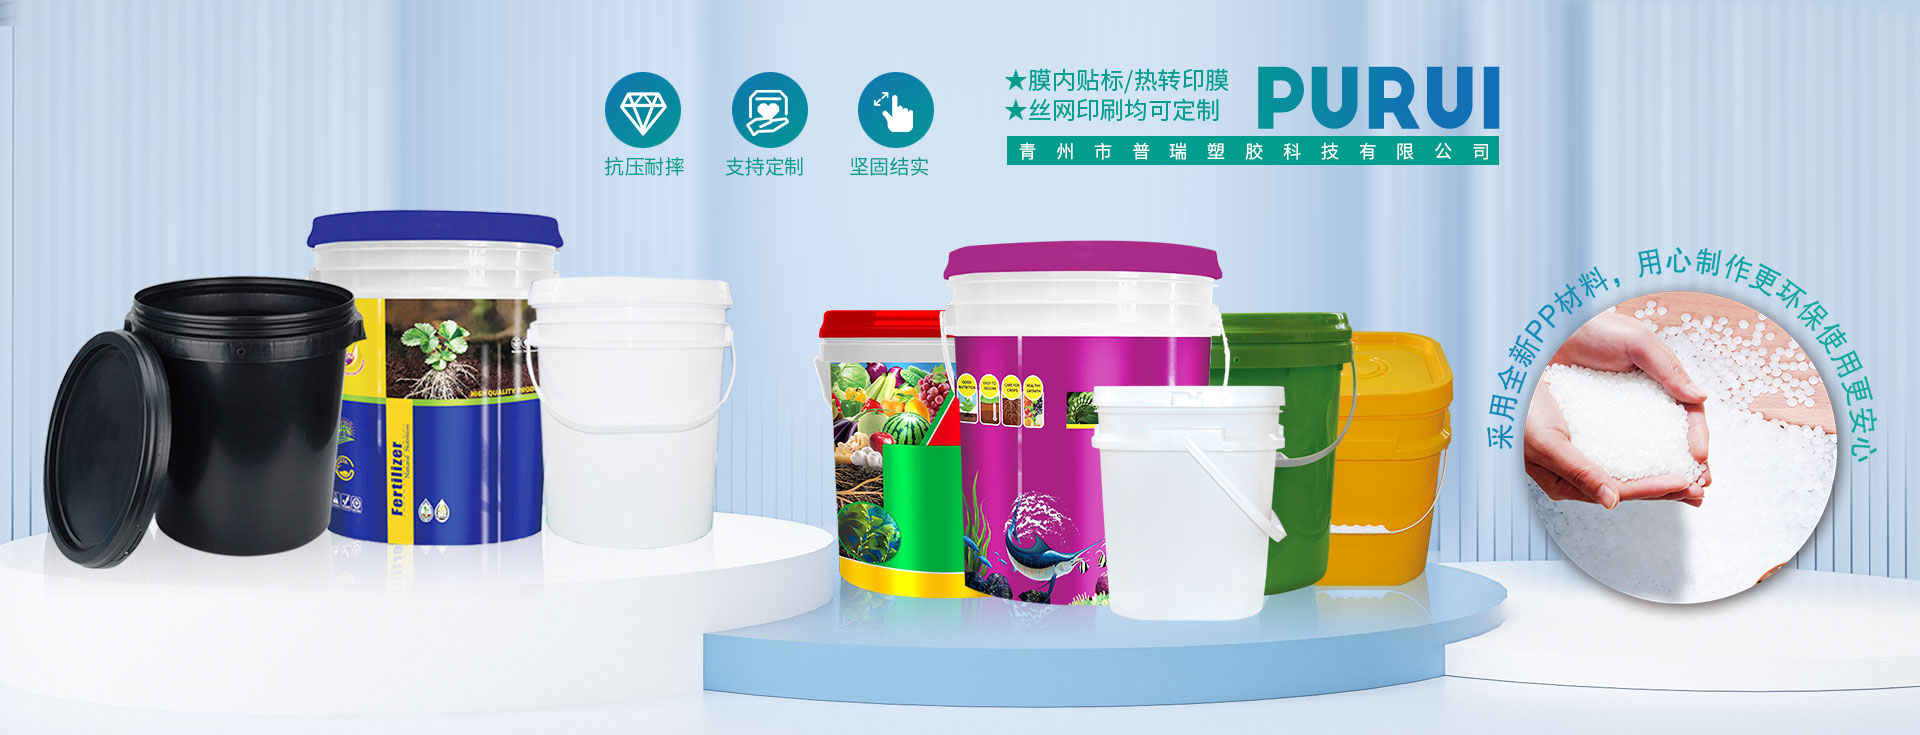 青州市普瑞塑胶科技有限公司